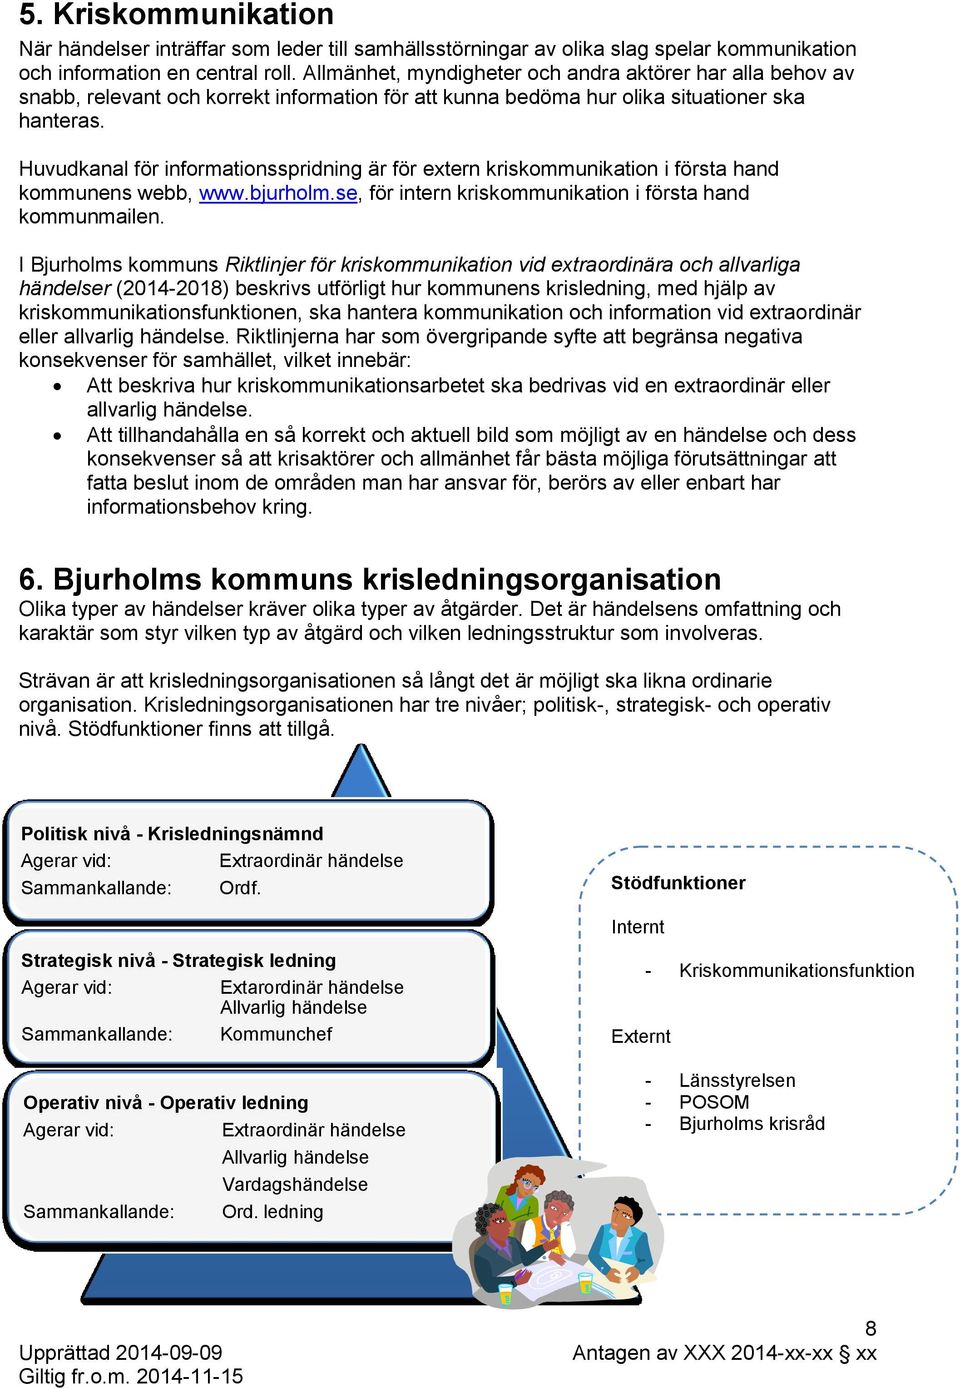 Huvudkanal för informationsspridning är för extern kriskommunikation i första hand kommunens webb, www.bjurholm.se, för intern kriskommunikation i första hand kommunmailen.